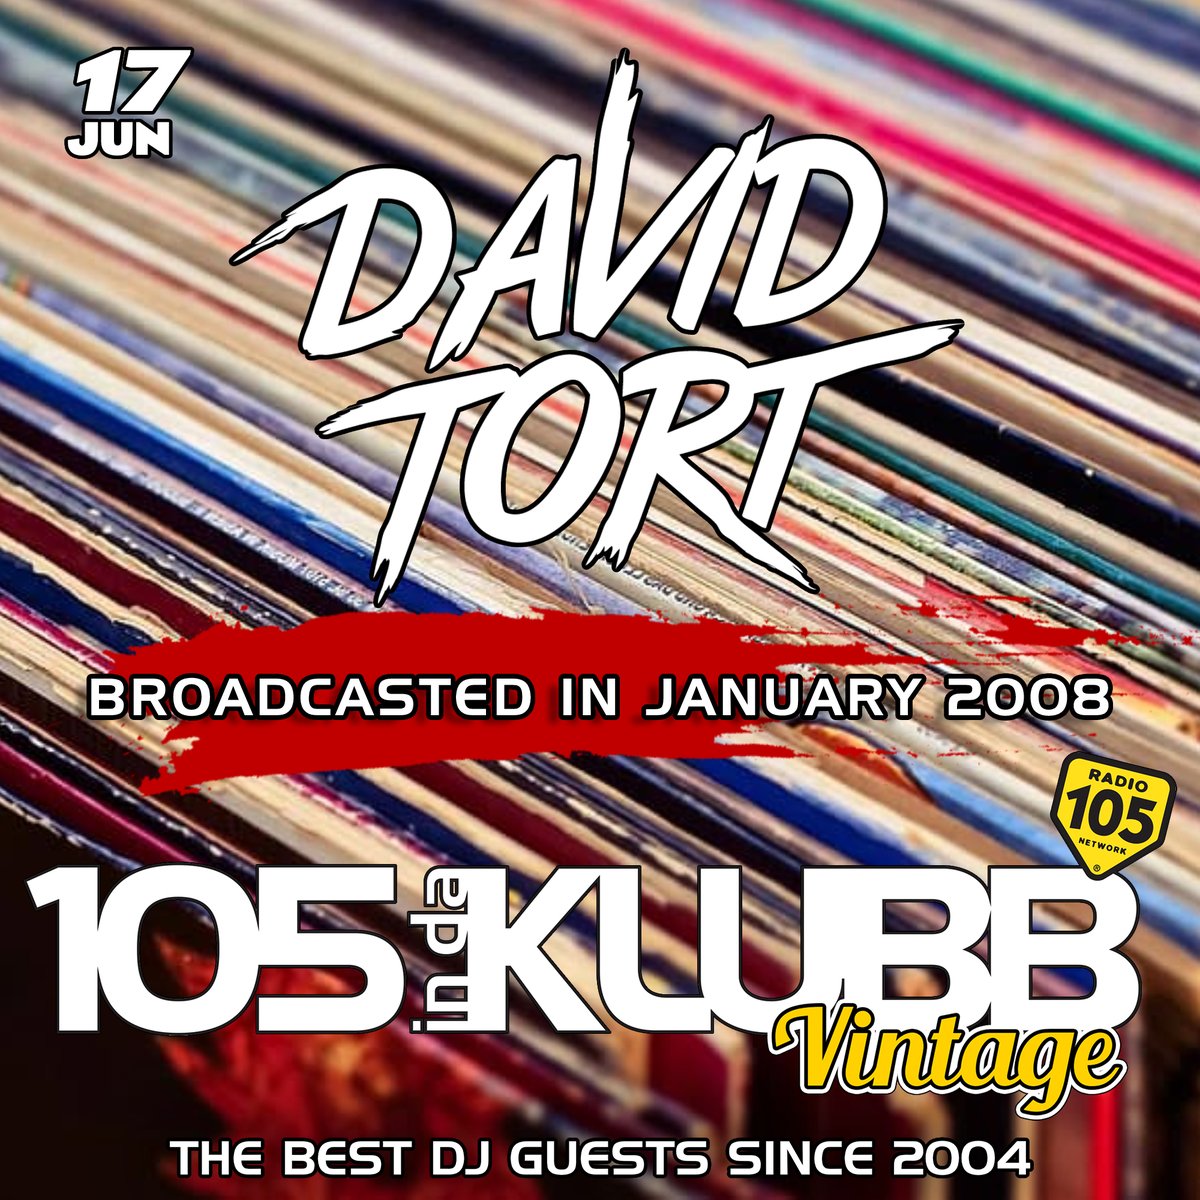 ☑ @davidtort on #105INDAKLUBBVINTAGE!
➖
Questo weekend con @andreabellidj 
e con i mixati dei Top Dj Internazionali 
che hanno fatto la storia di #105INDAKLUBB
➖
#WEAREINDAKLUBB
La notte dance firmata 
@Radio105 💥